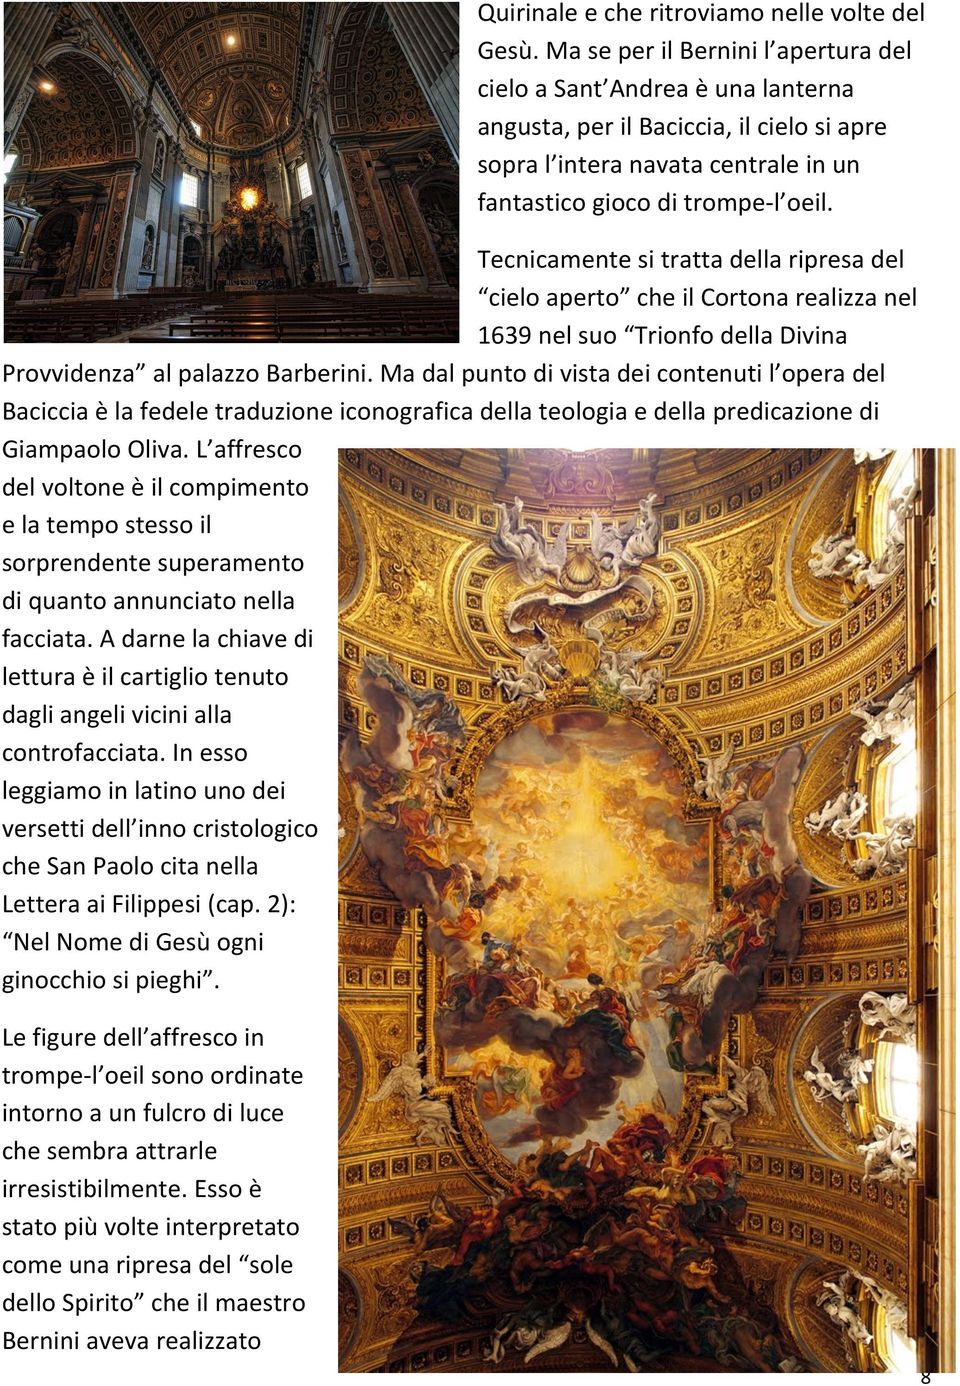 Tecnicamente si tratta della ripresa del cielo aperto che il Cortona realizza nel 1639 nel suo Trionfo della Divina Provvidenza al palazzo Barberini.